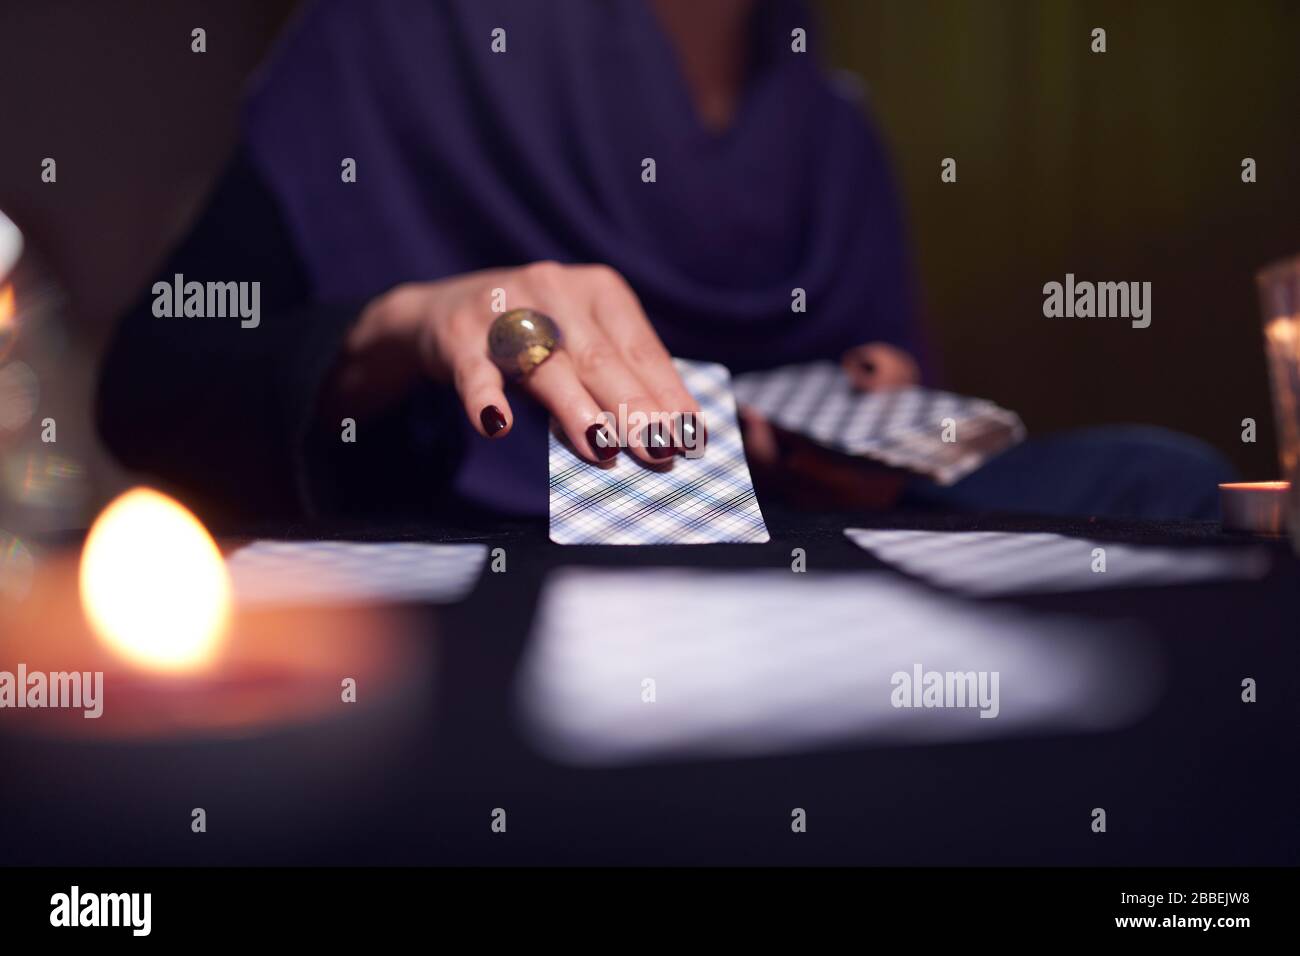 Primo piano delle mani del mitt-reader femminile con le carte fortune-telling al tavolo con le candele in stanza buia Foto Stock